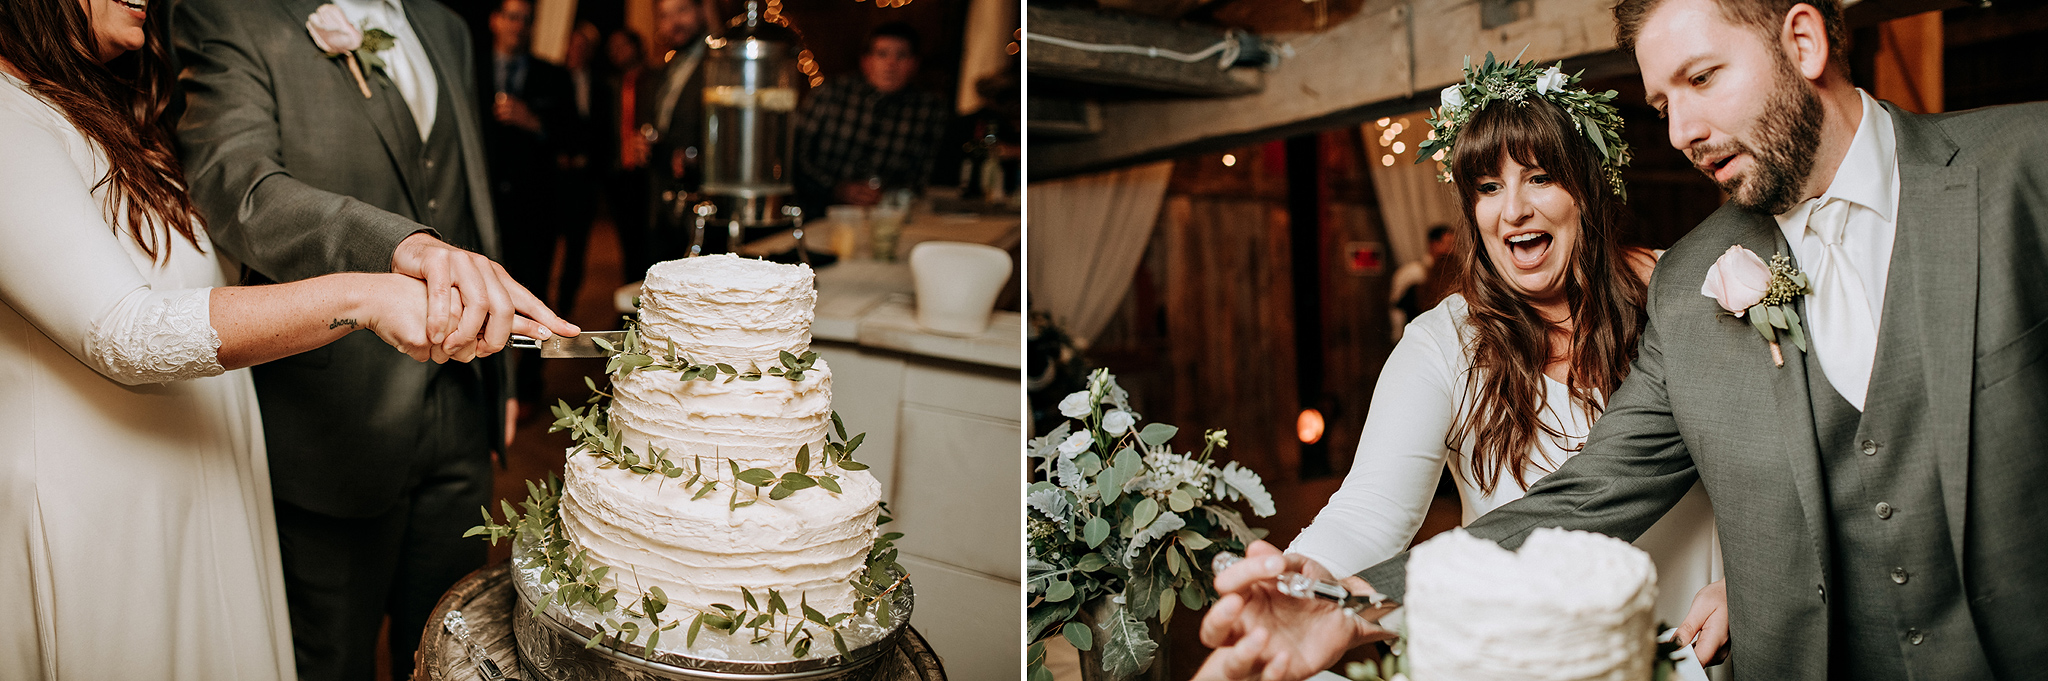 cake cutting at meaford barn wedding